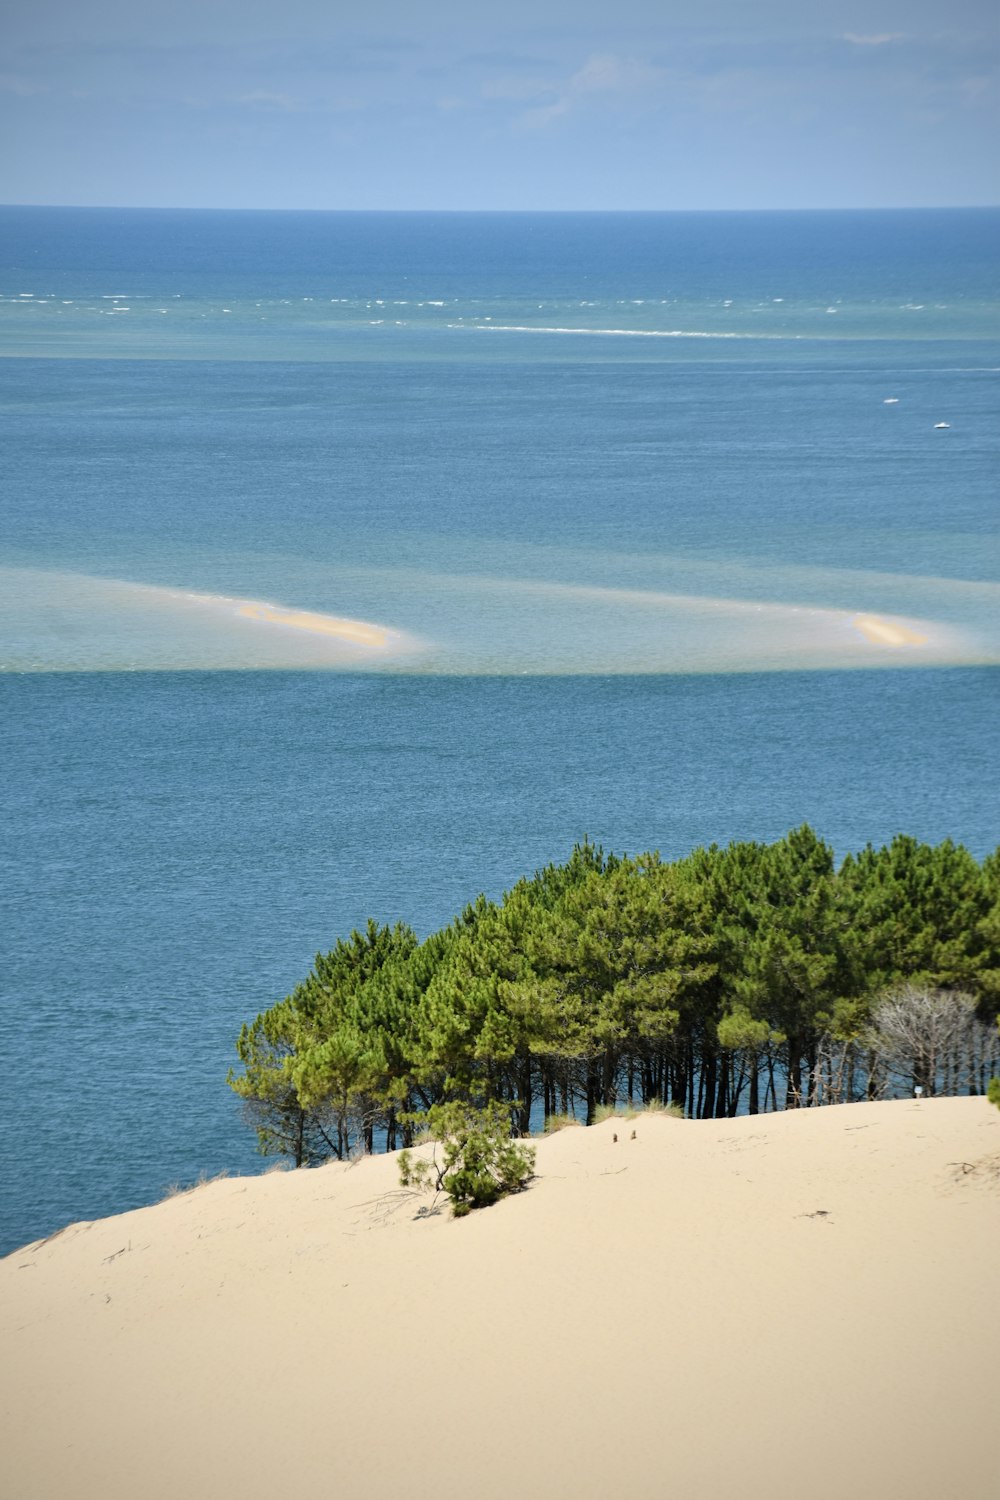 Un grupo de árboles sentados en la cima de una playa de arena